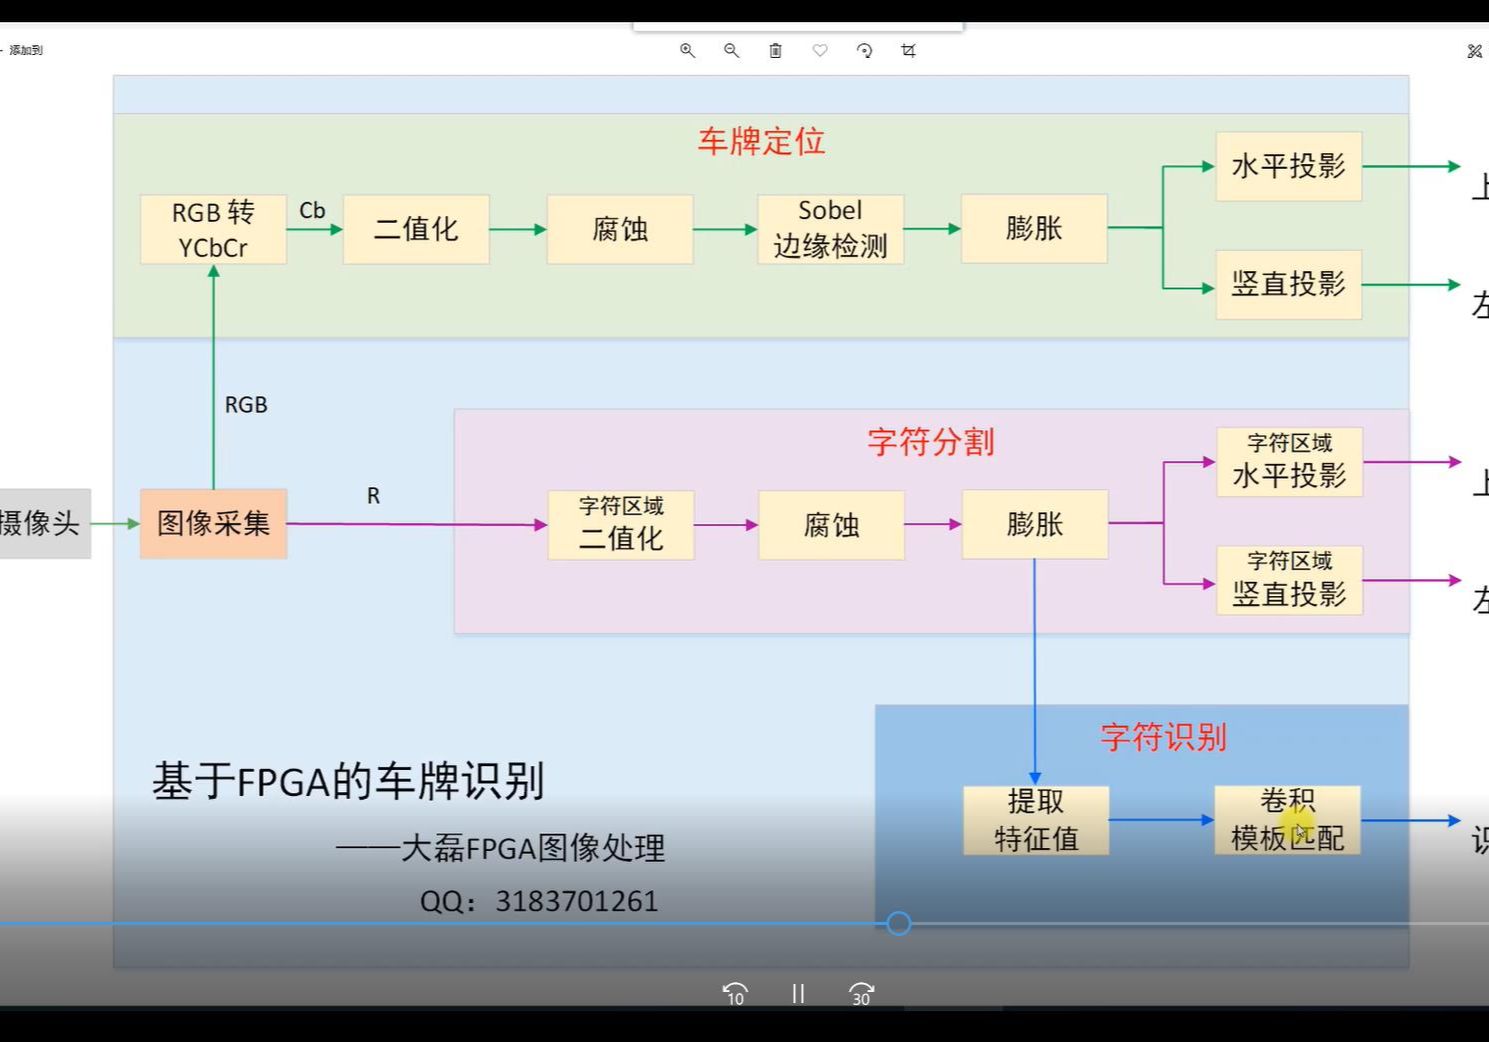 13_水平投影 & 卷积模板匹配_基于FPGA的车牌识别_大磊FPGA图像处理